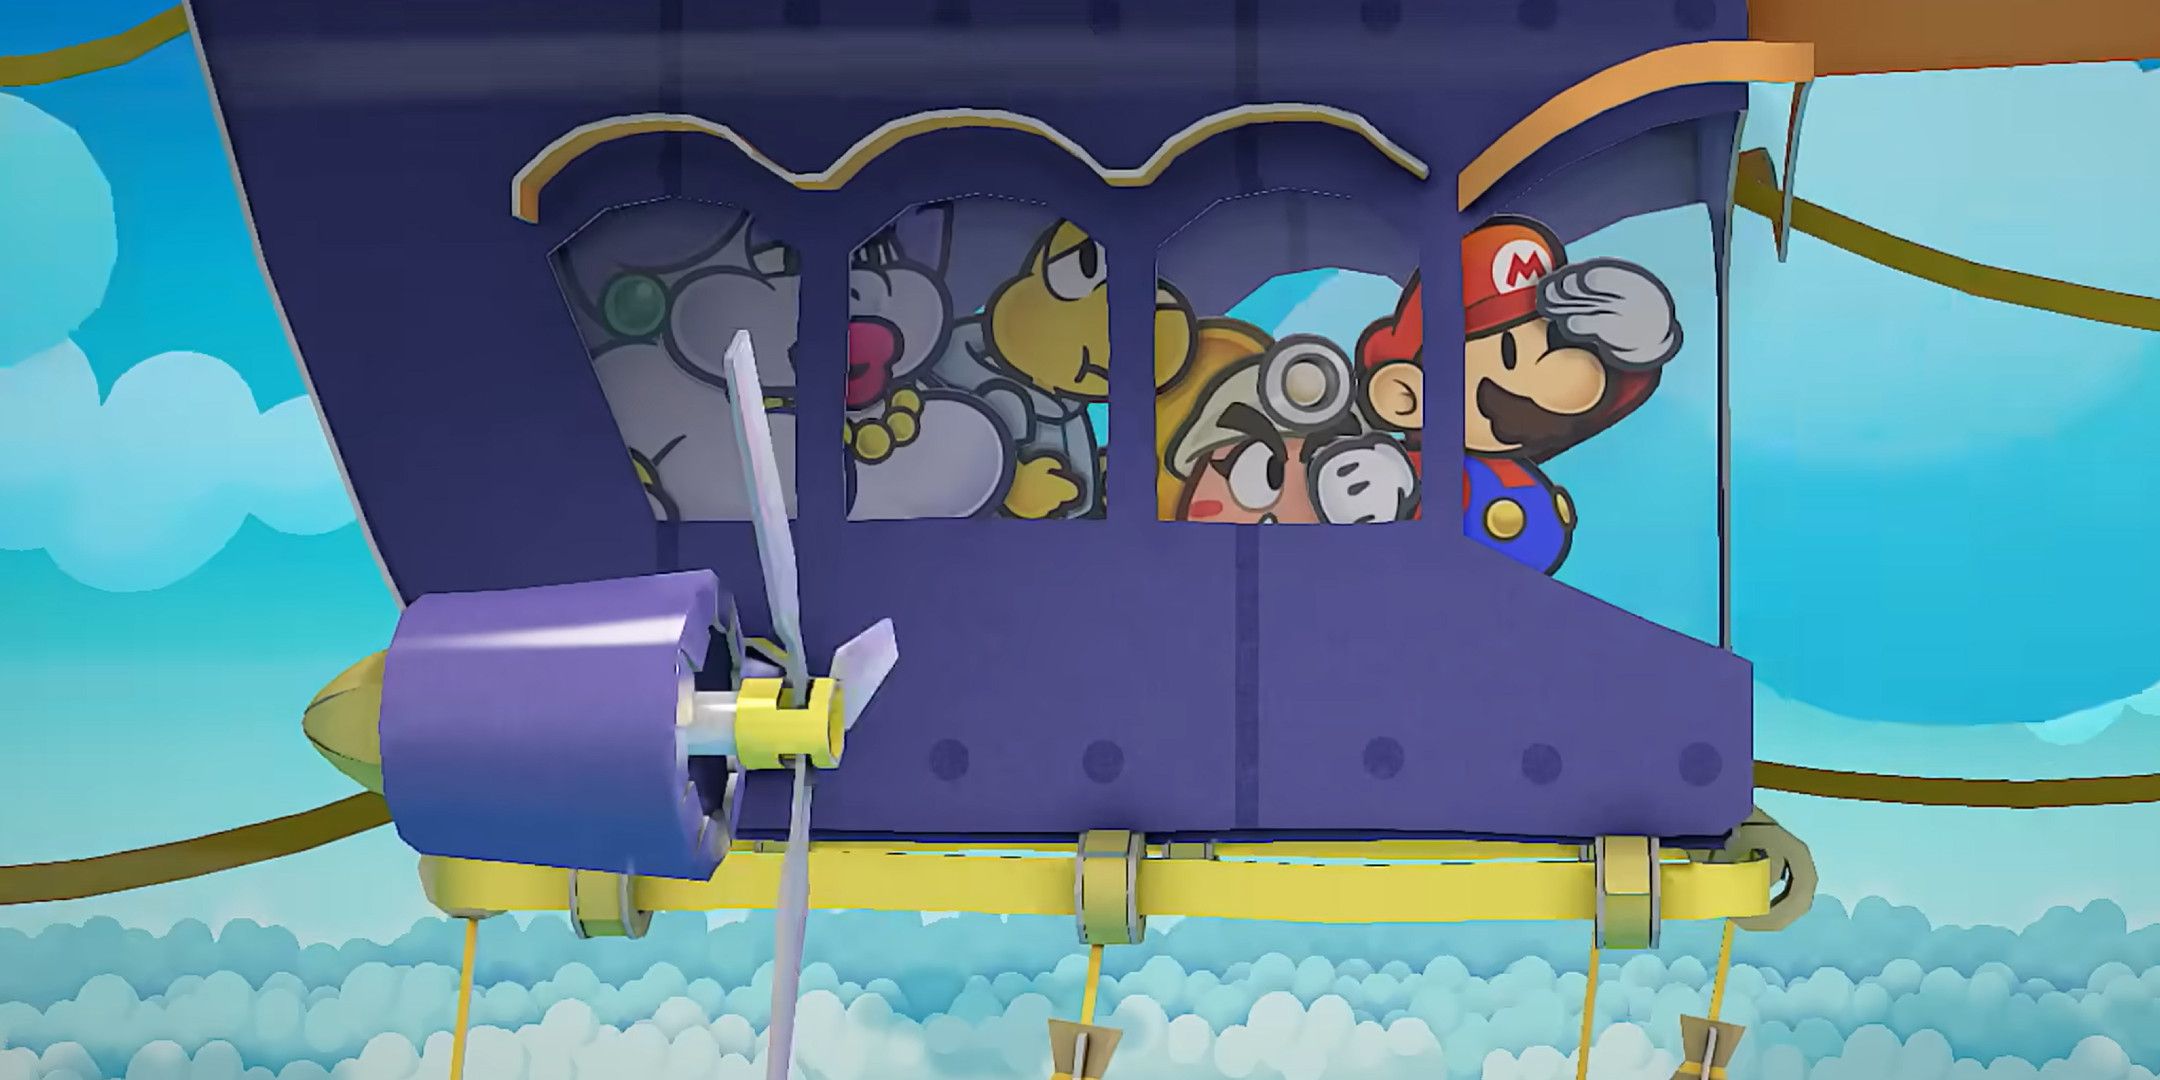 Paper Mario: тысячелетний римейк двери заменил печально известное приветствие Марио